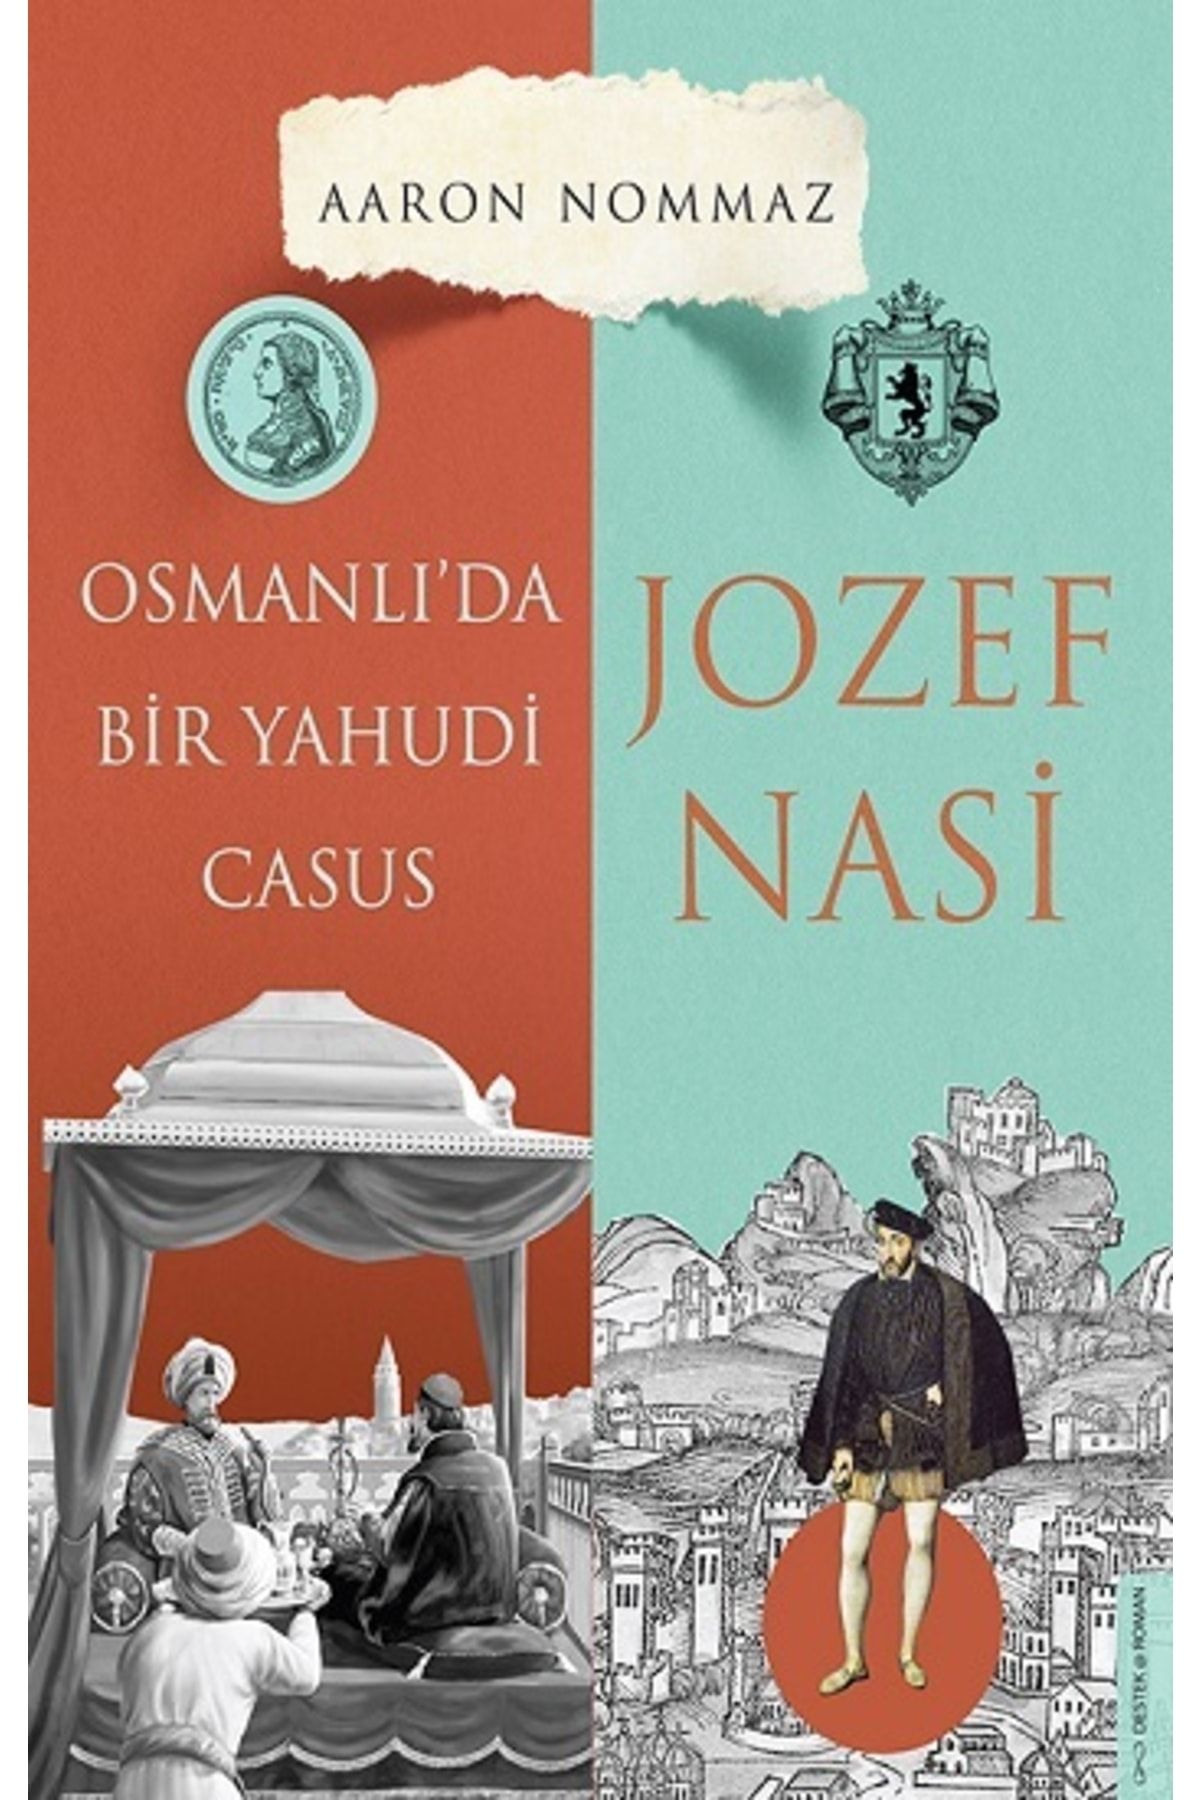 Destek Osmanlı’da Bir Yahudi Casus Josef Nasi Aaron Nommaz Yayınları